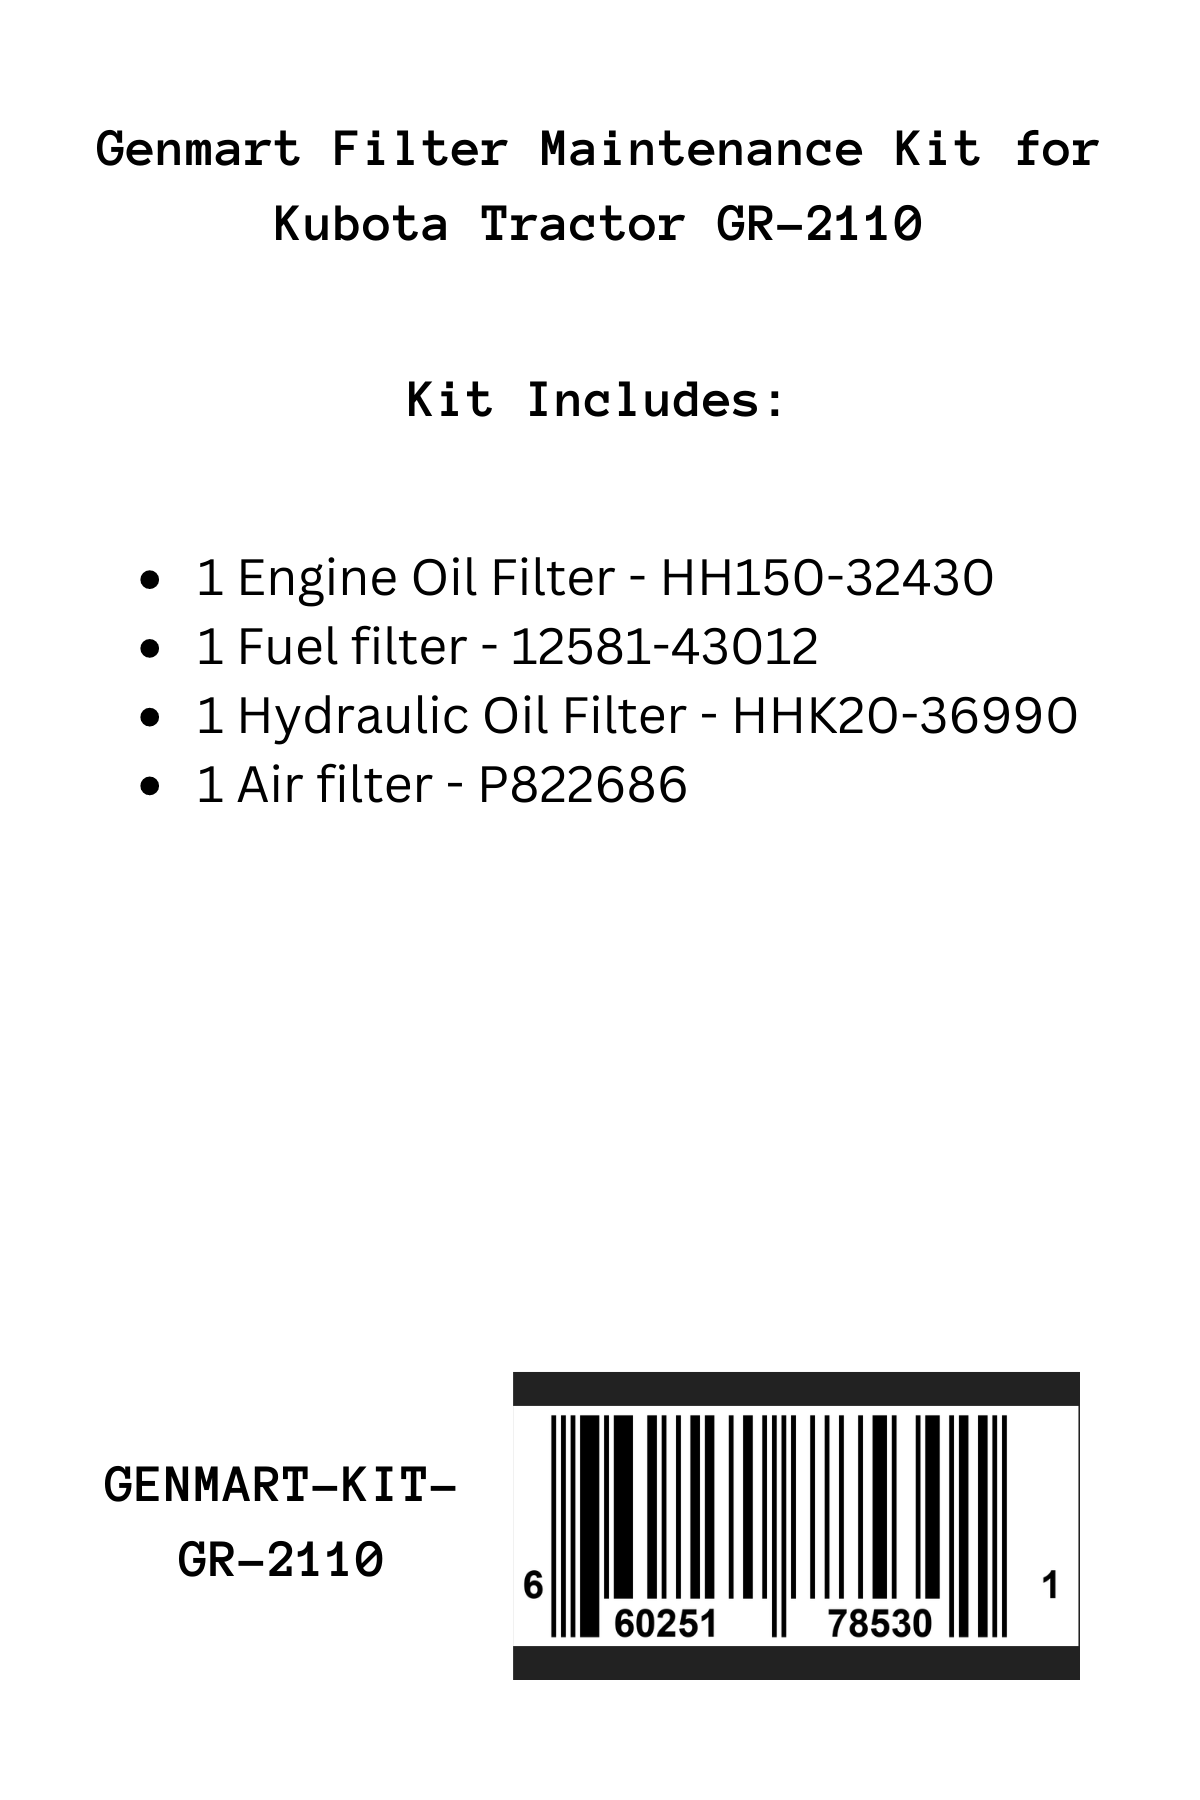 Genmart Maintenance Kit for Kubota Tractor GR-2110